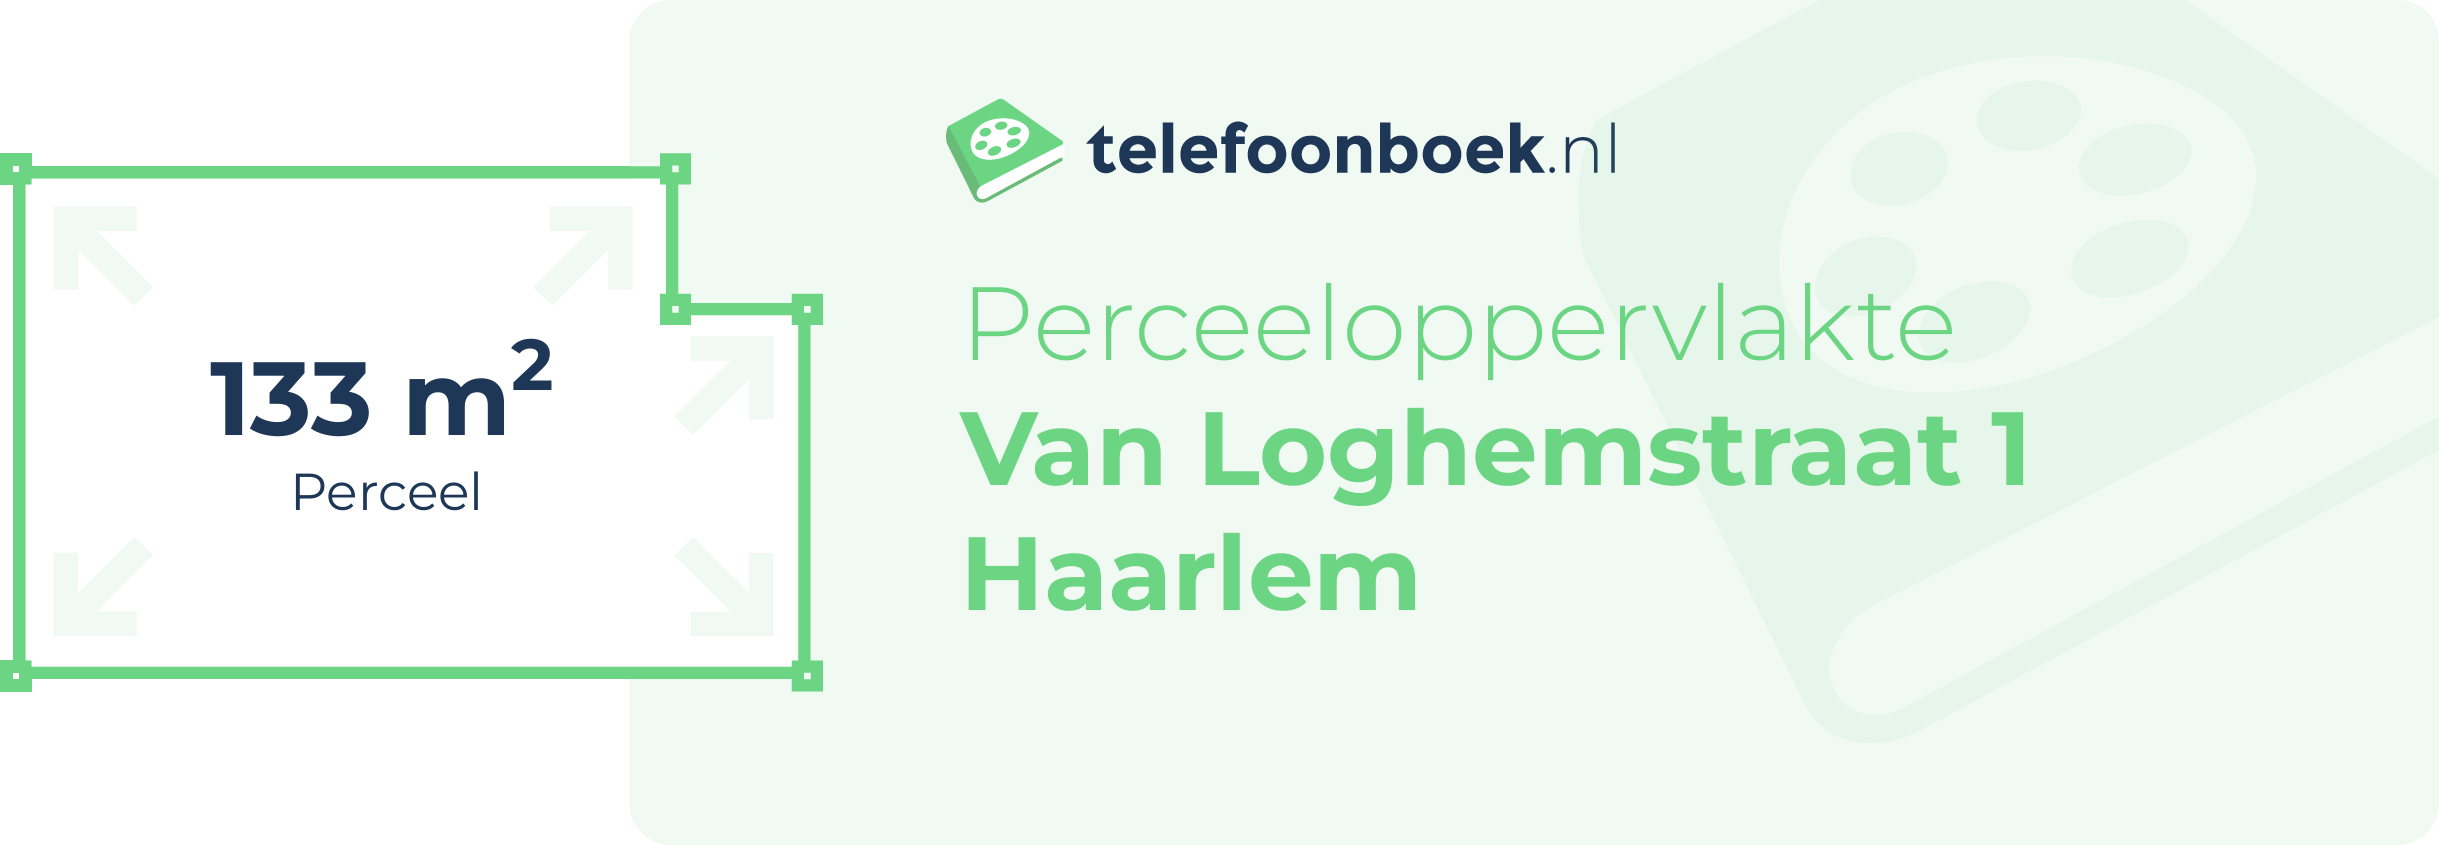 Perceeloppervlakte Van Loghemstraat 1 Haarlem